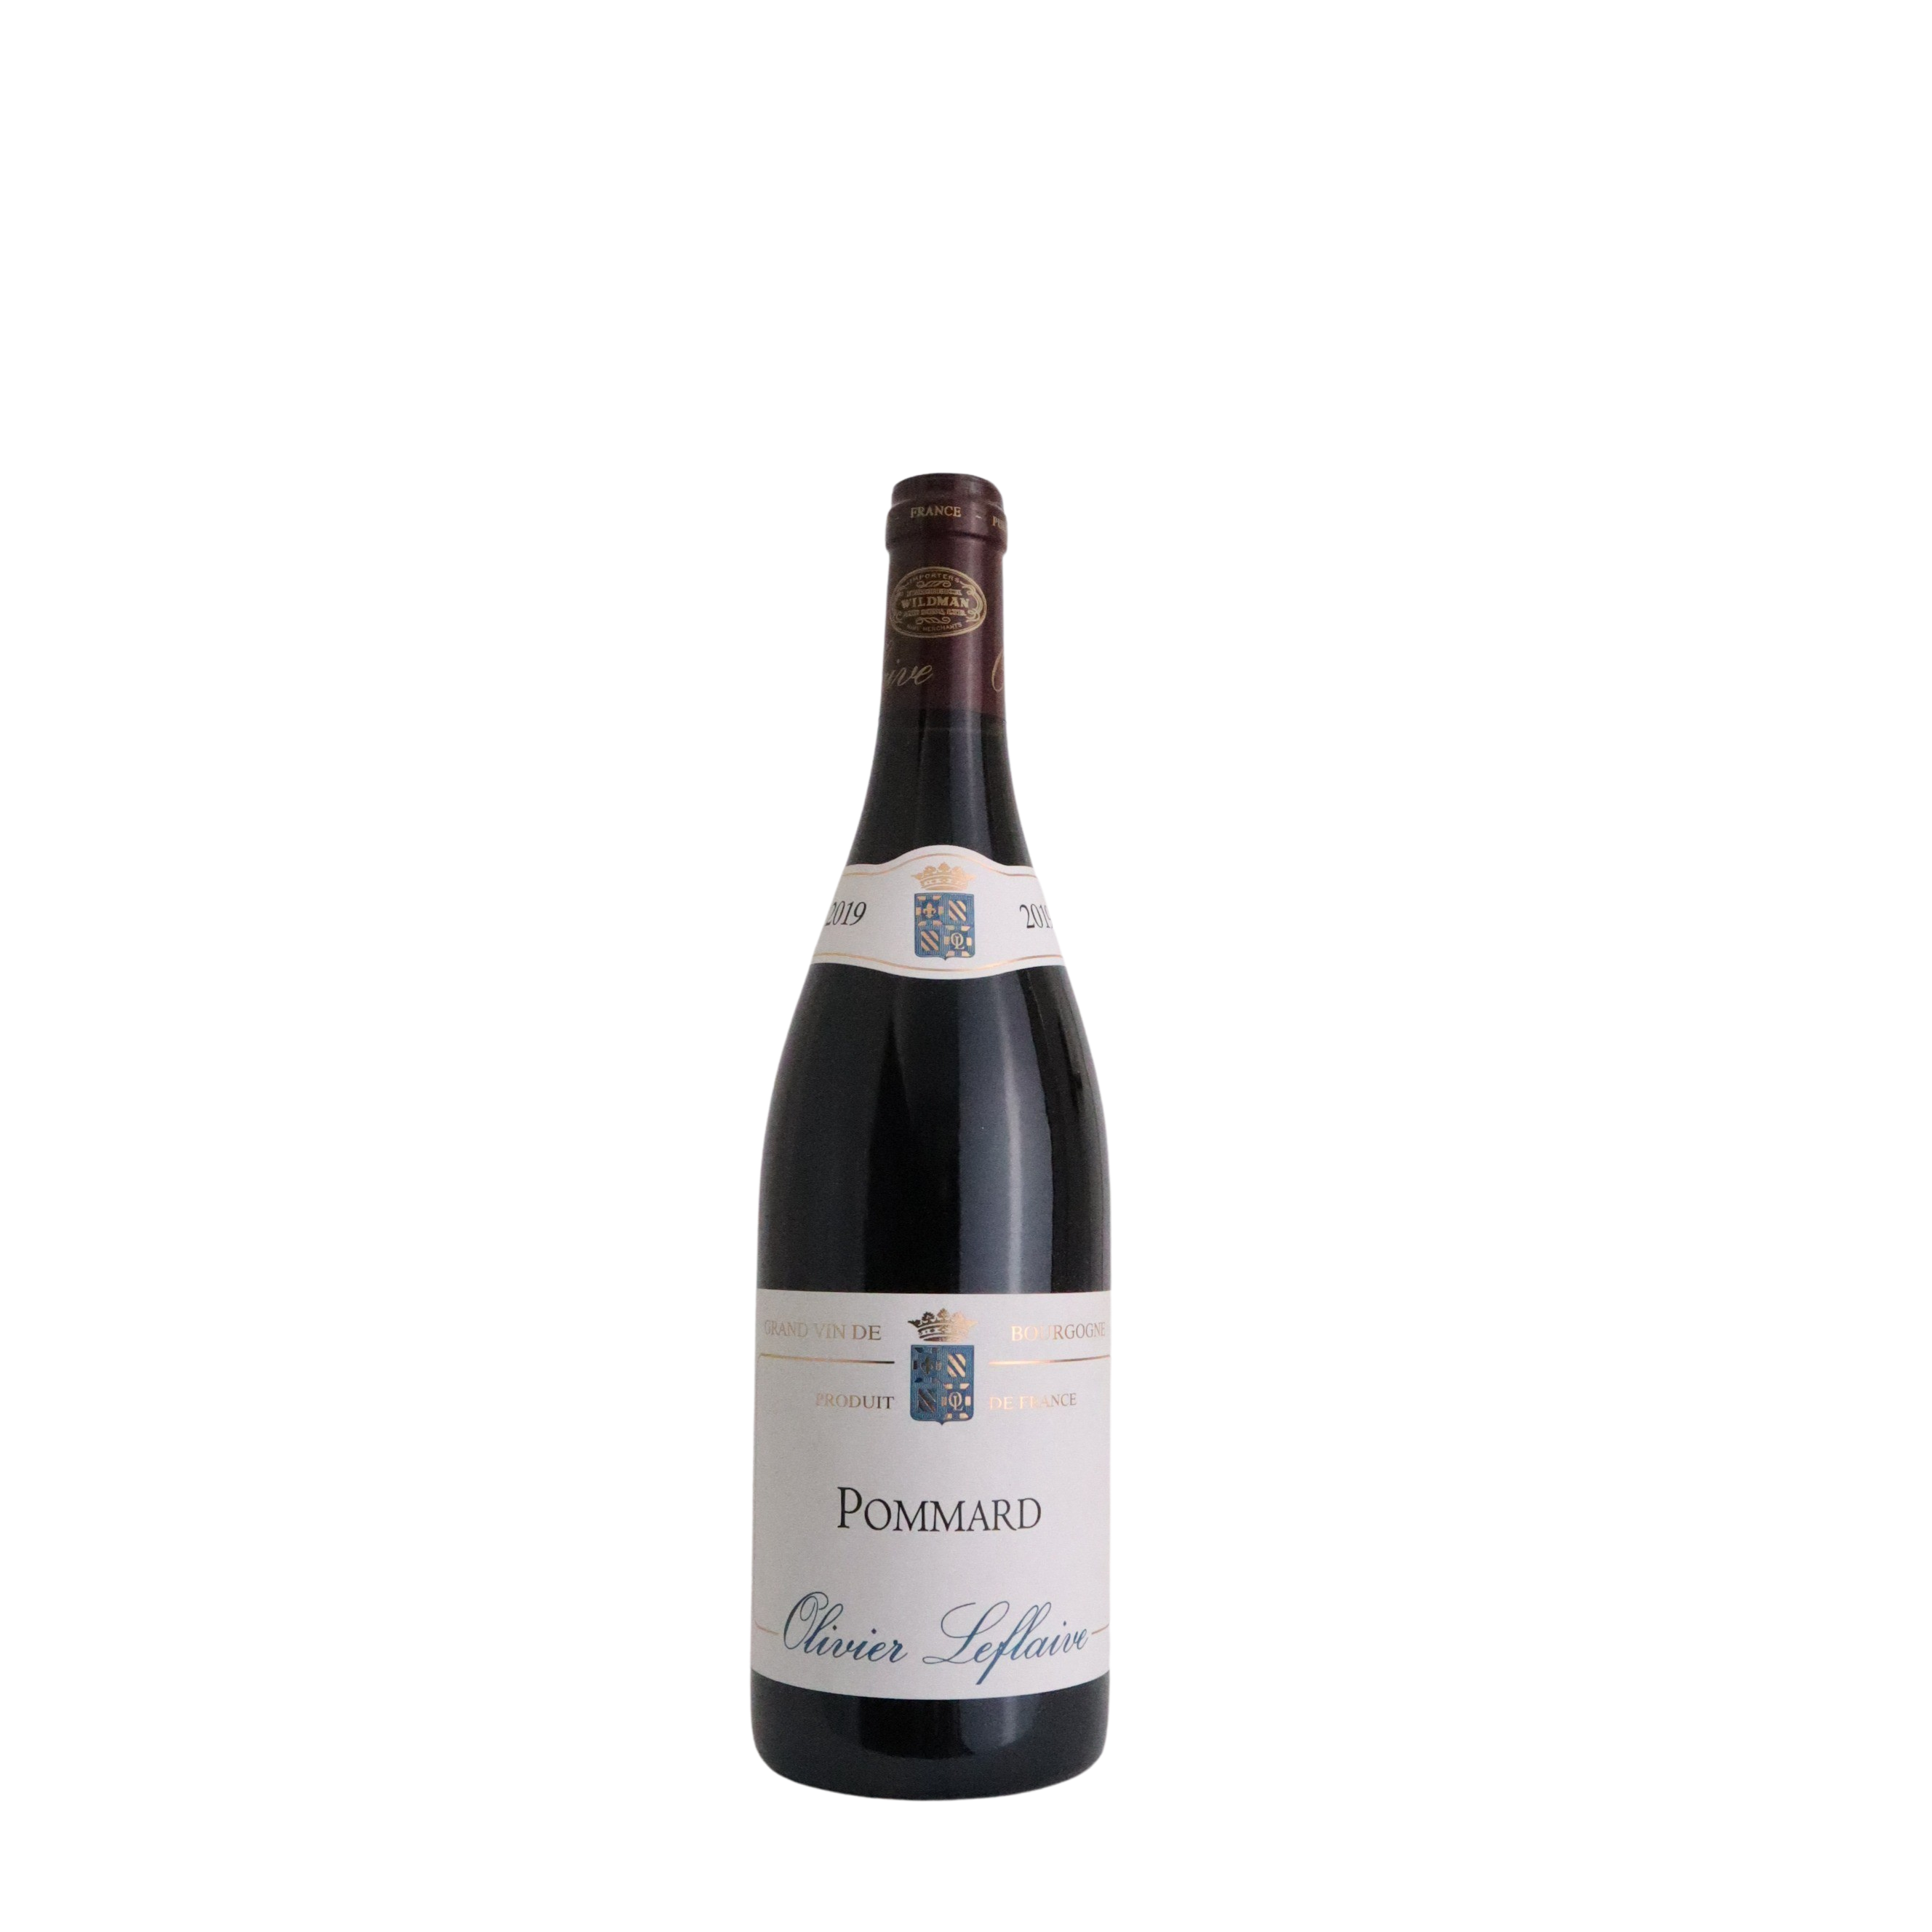 2019 Olivier Leflaive Grand Vin De Bourgogne Pinot Noir - Grand Cru